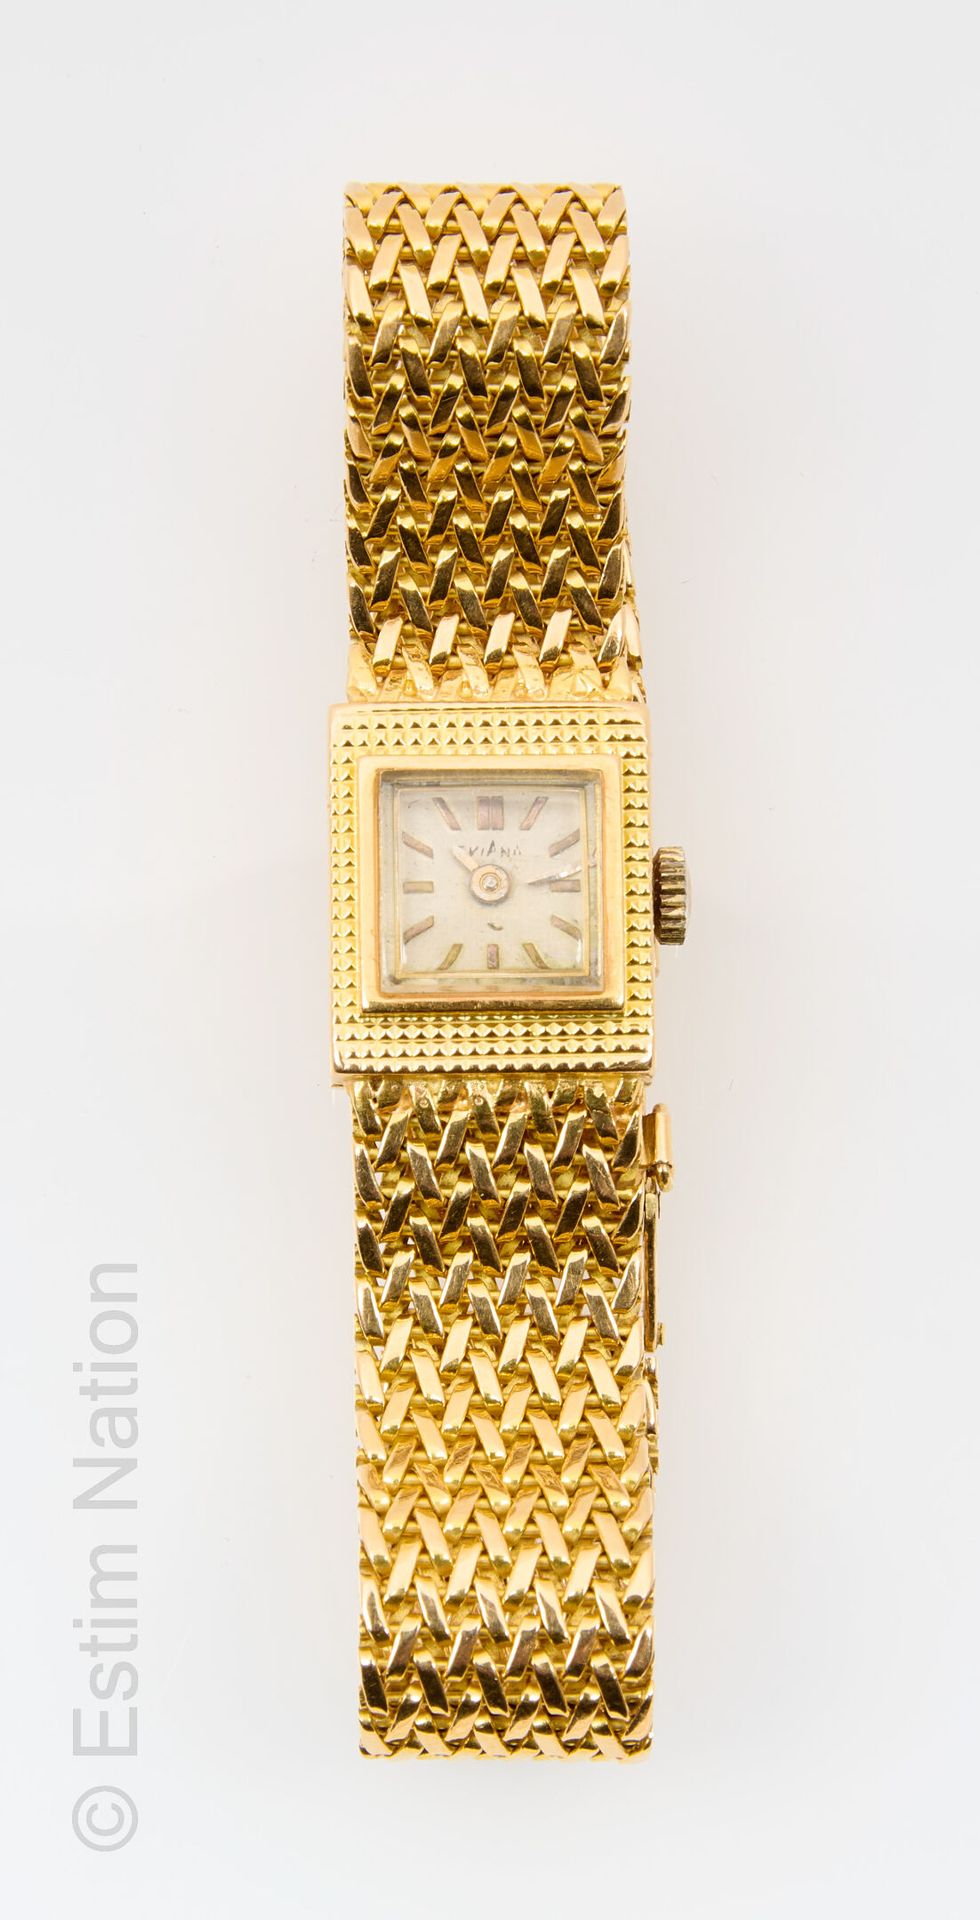 EVIANA Eviana
Reloj de ciudad en oro amarillo de 18 quilates 750 milésimas con m&hellip;